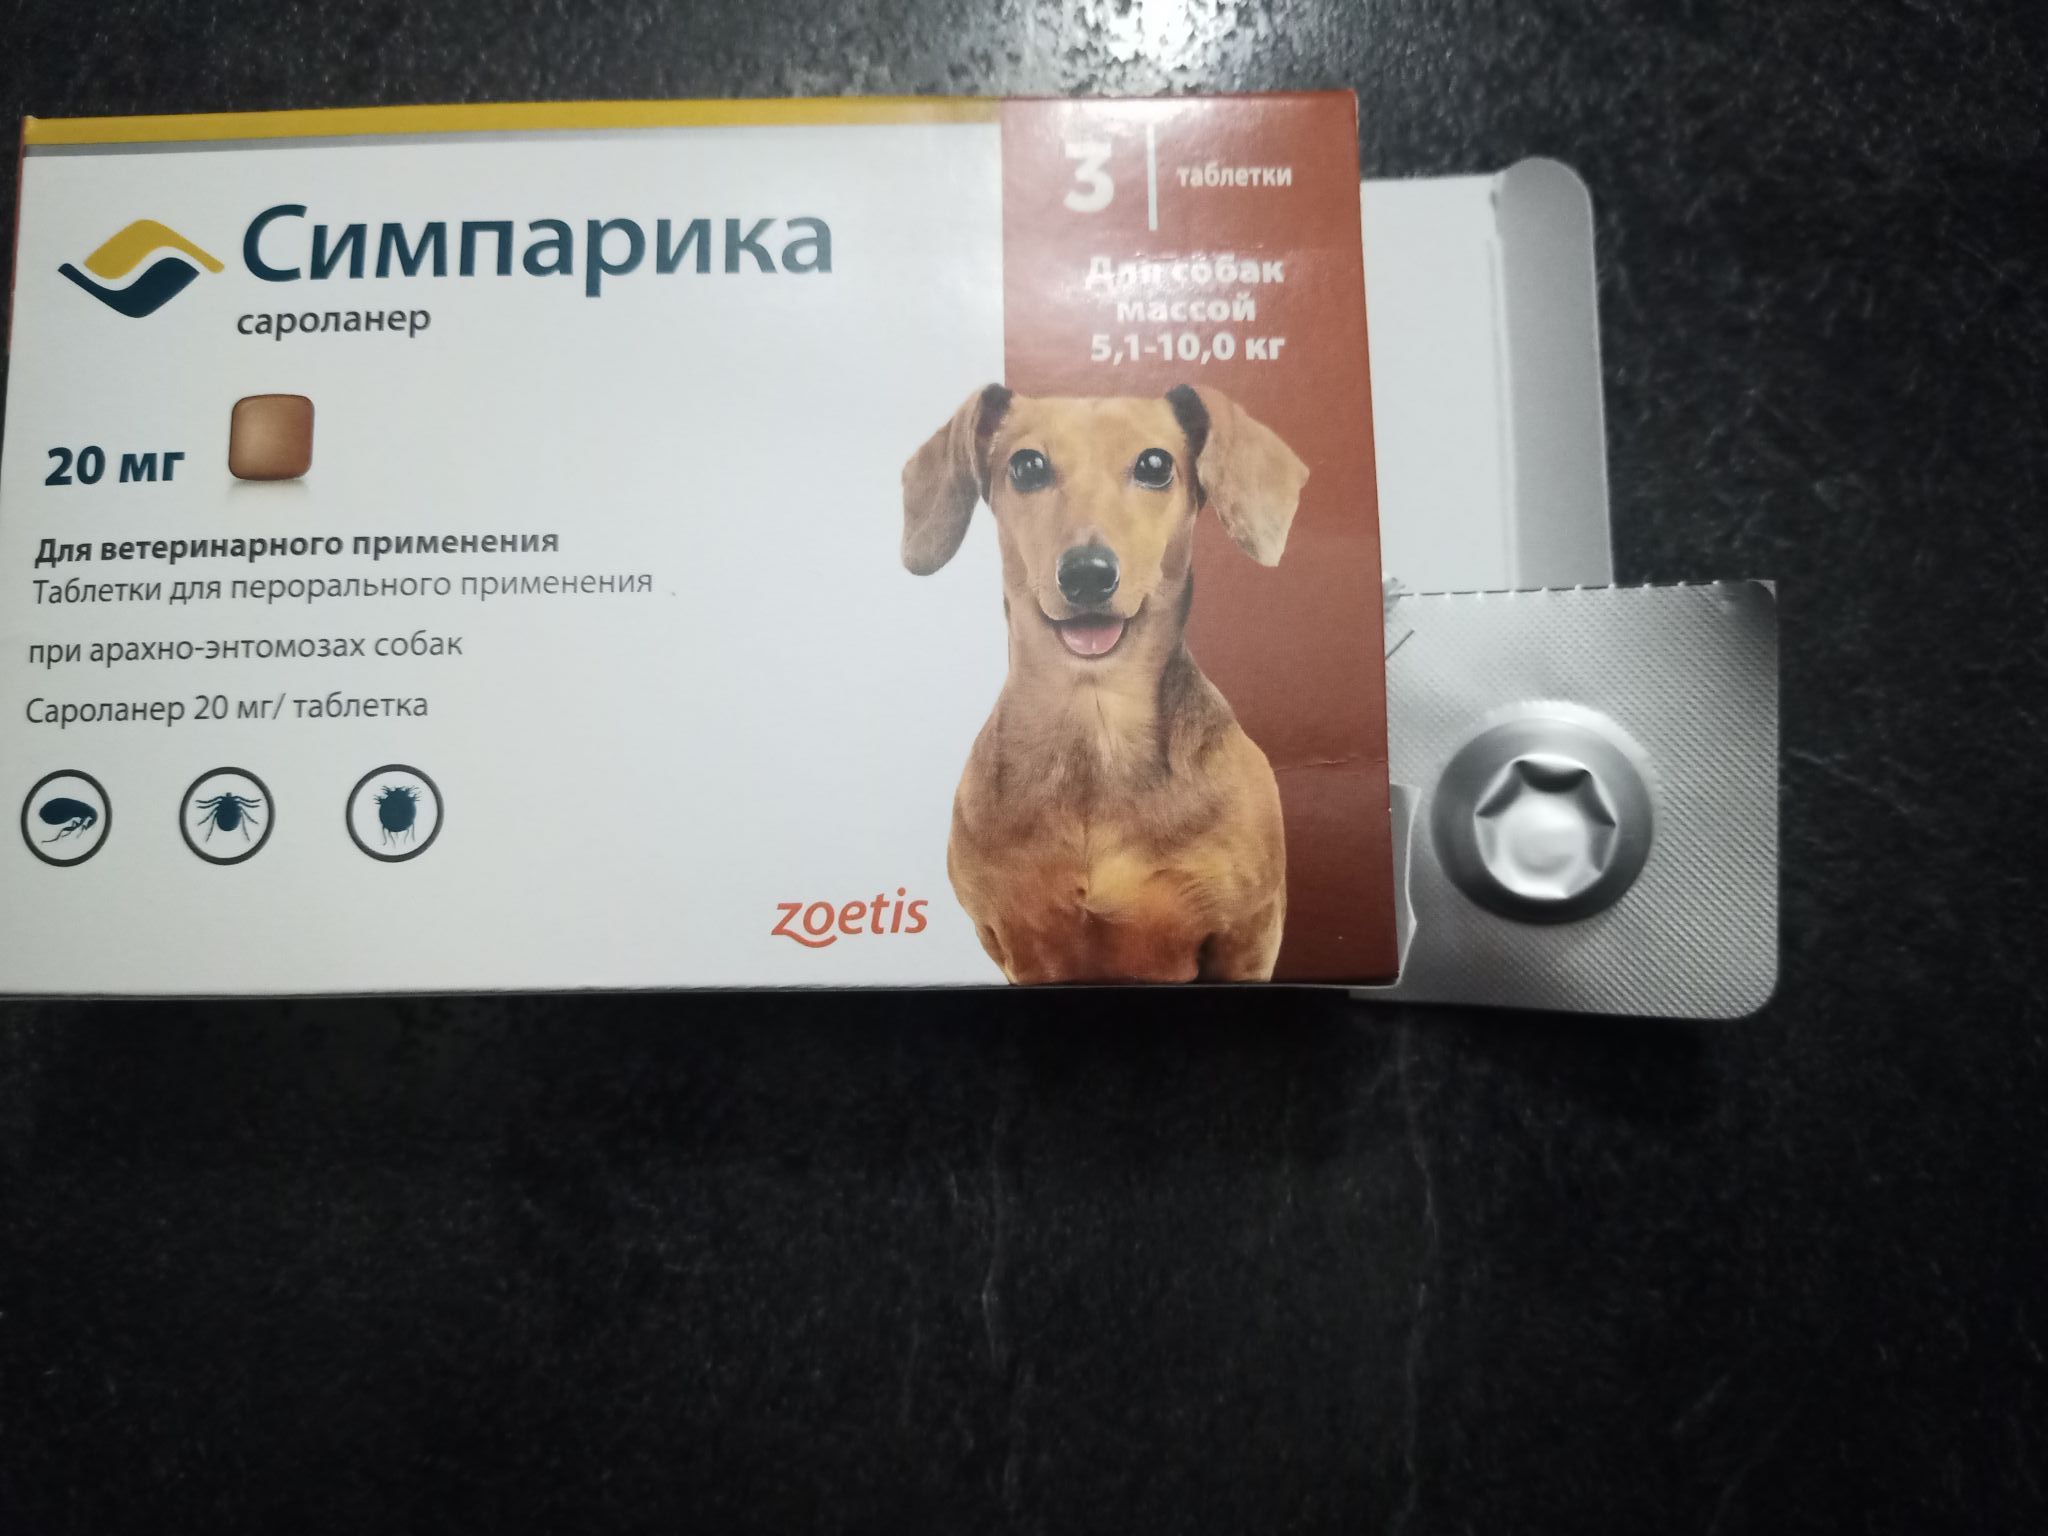 Симпарика таблетка для собак купить в екатеринбурге. В продаже появилась Бравекто и Симпарика объявление.